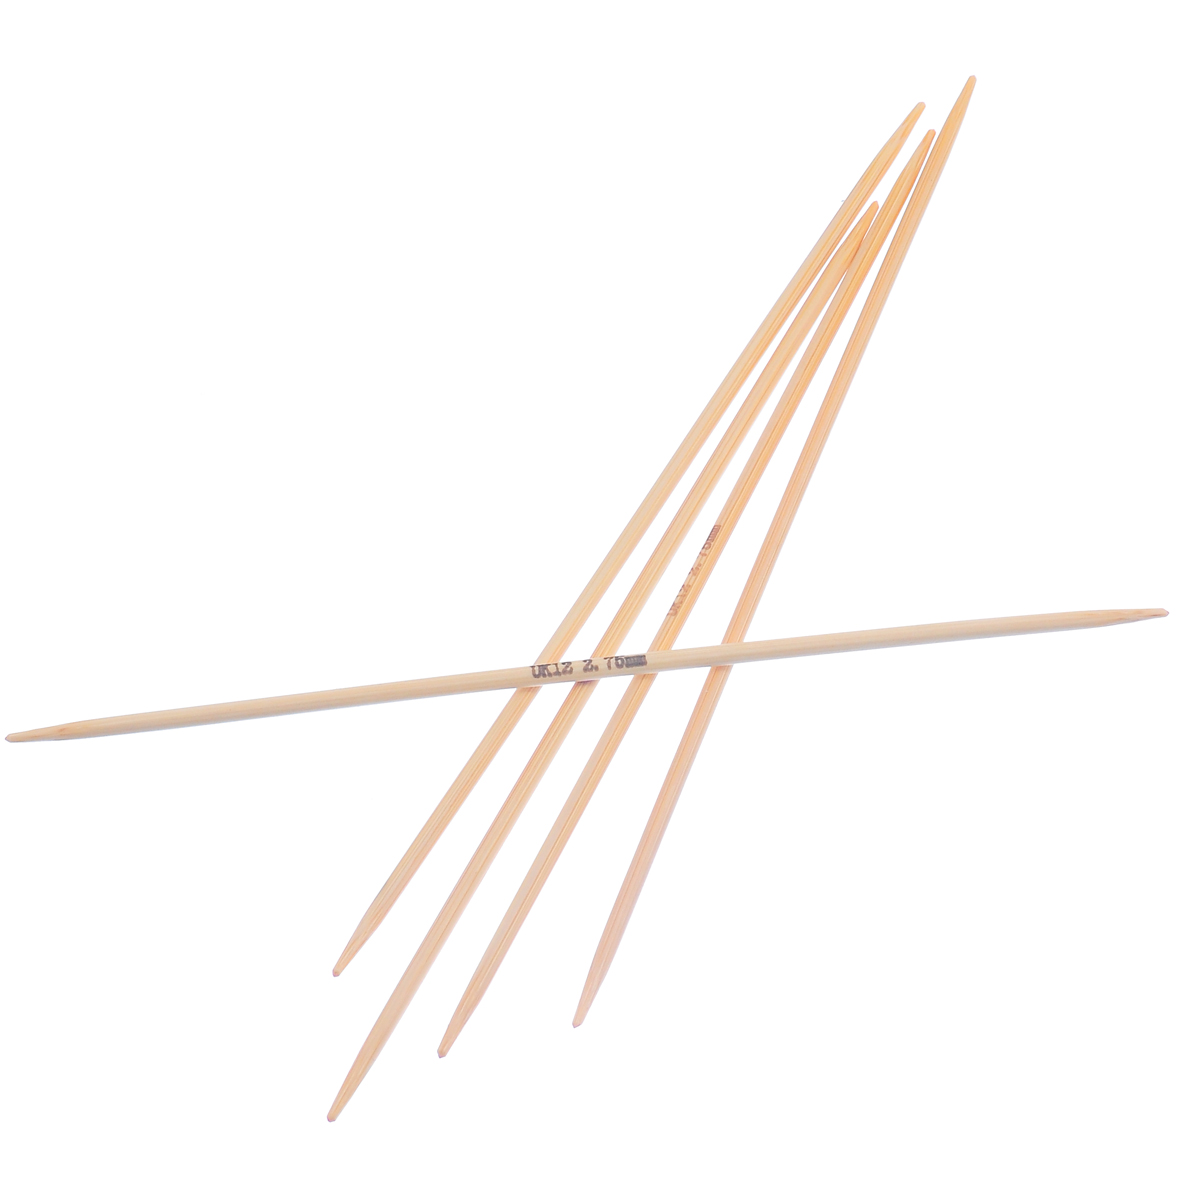 (UK12 2.75mm) 竹 ダブルポイント 編み針 ナチュラル 15cm 長さ、 1 セット ( 5 個/セット) の画像